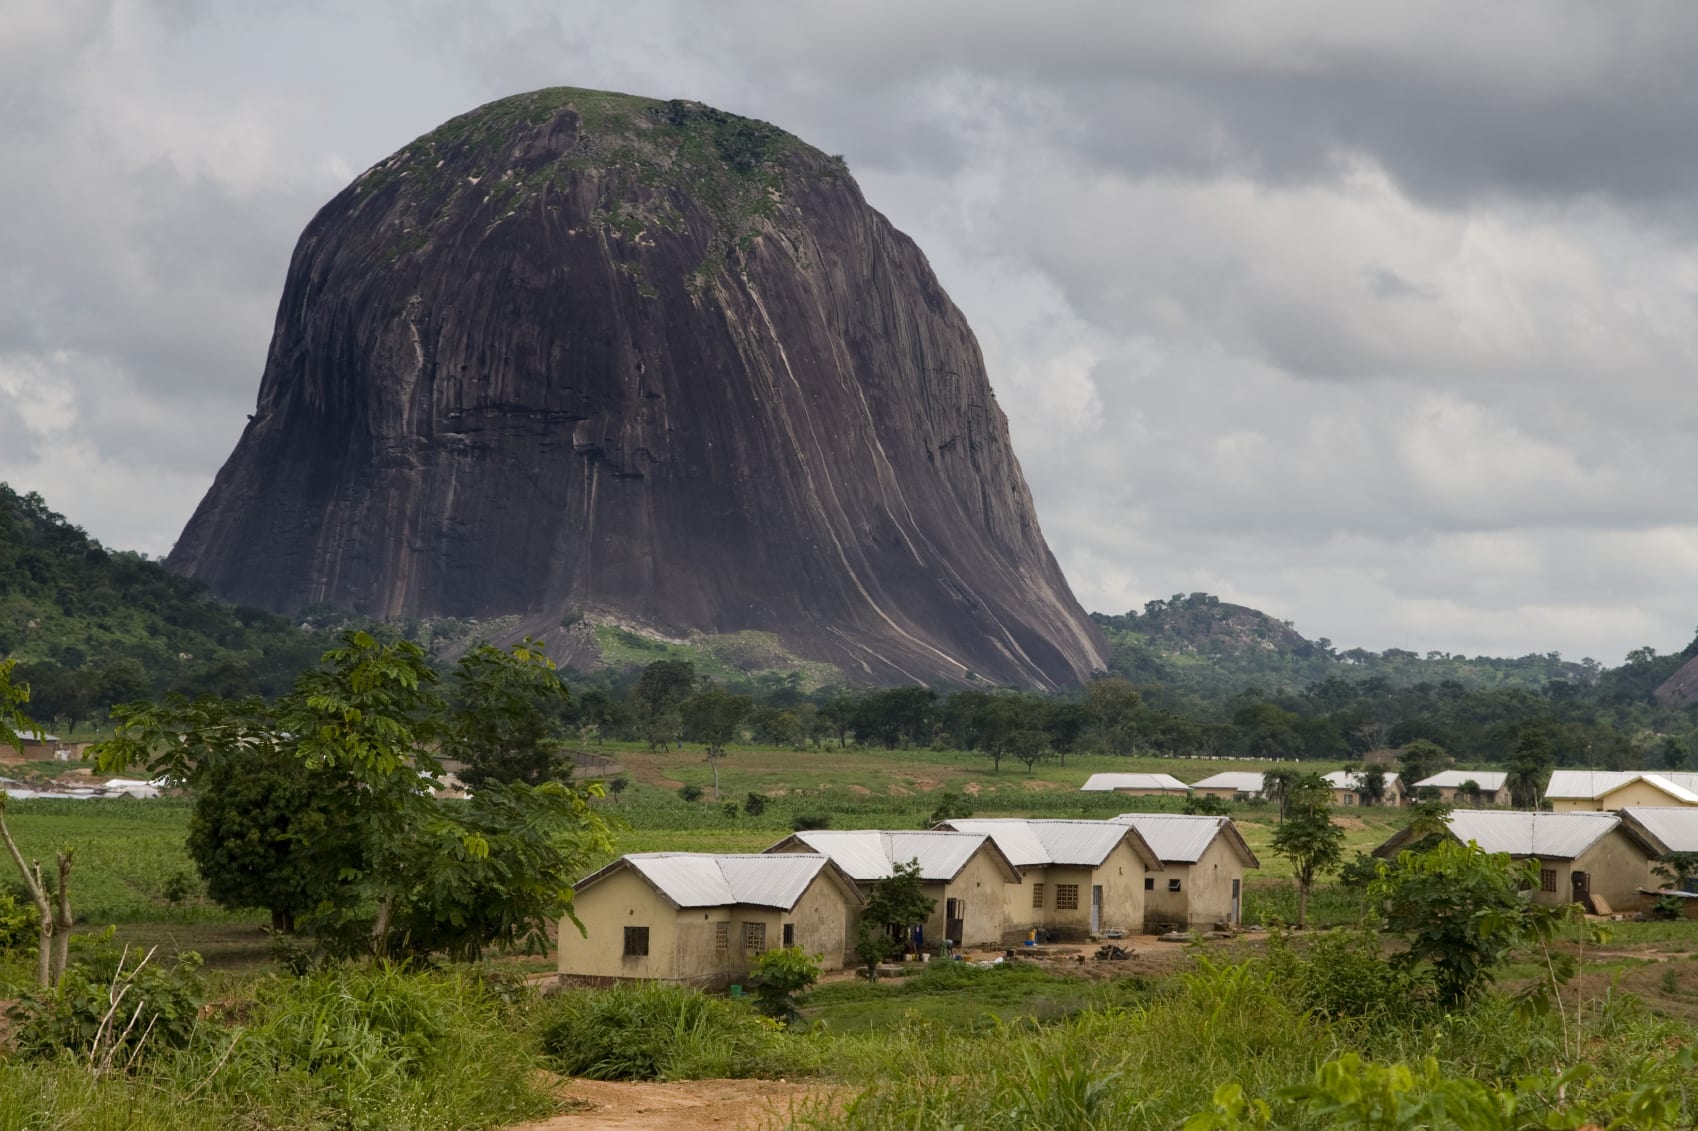 Zuma Rock in Niger State, Nigeria